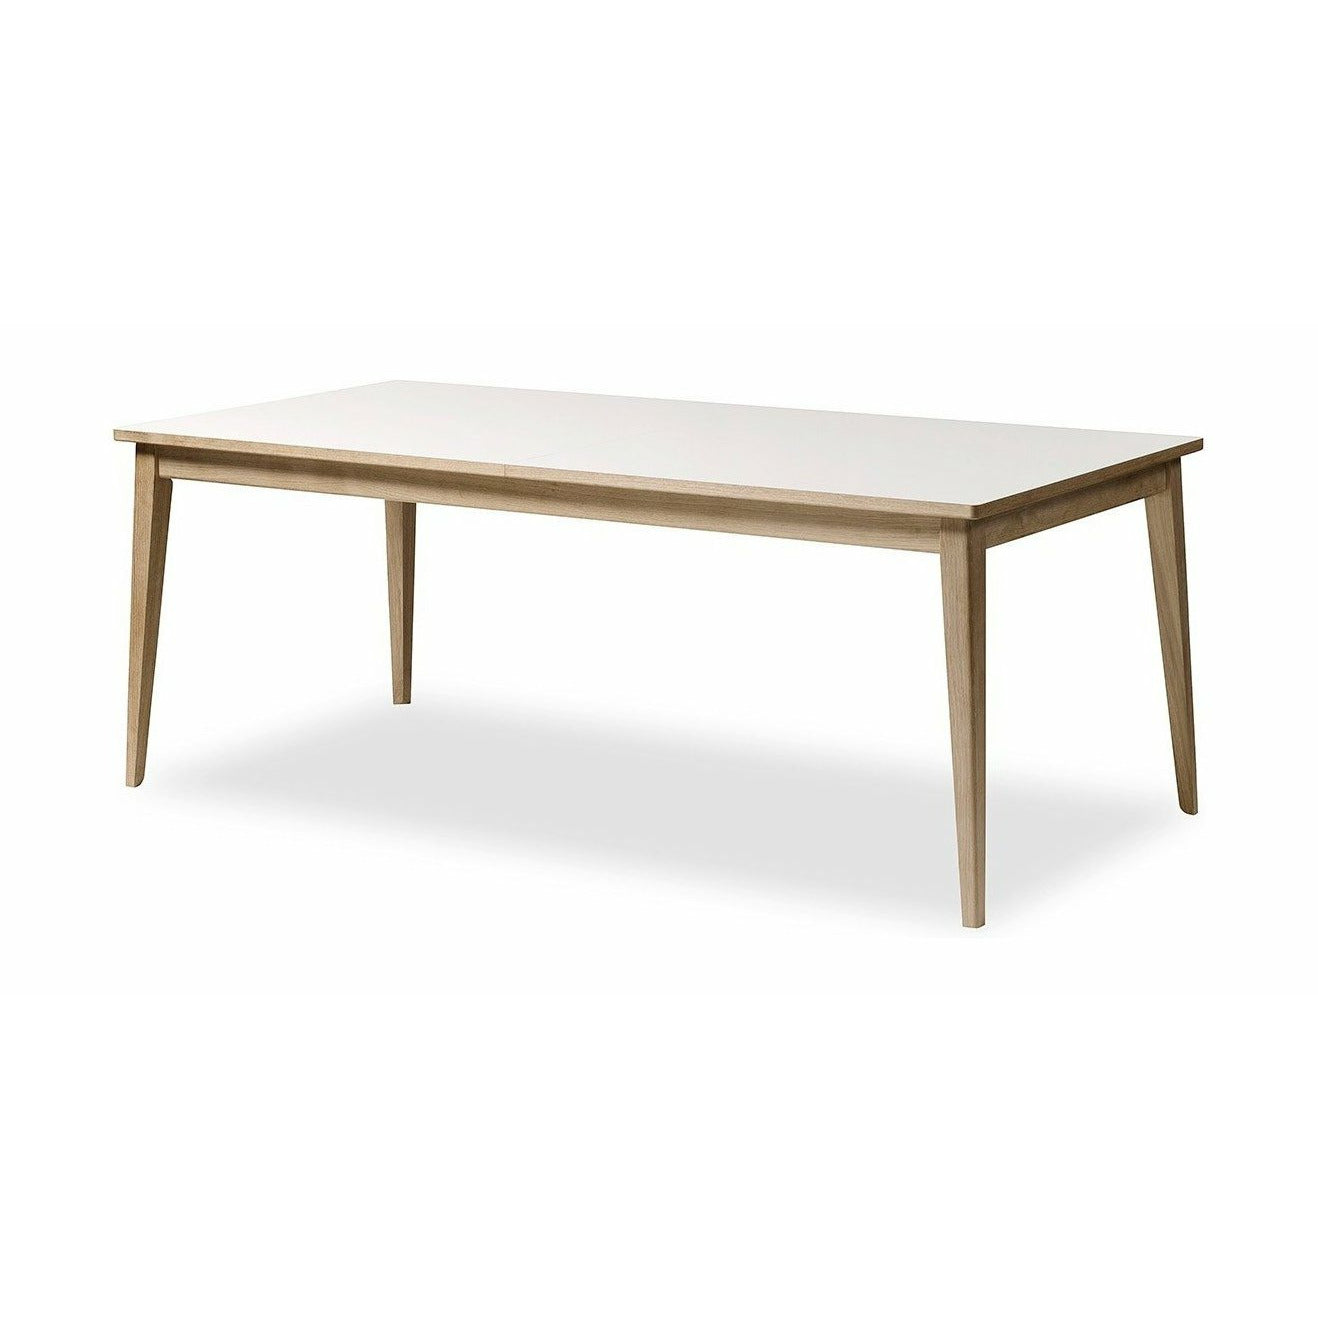 Andersen Furniture T3 matbord i vitt laminat, tvål ek förstod, 200 cm